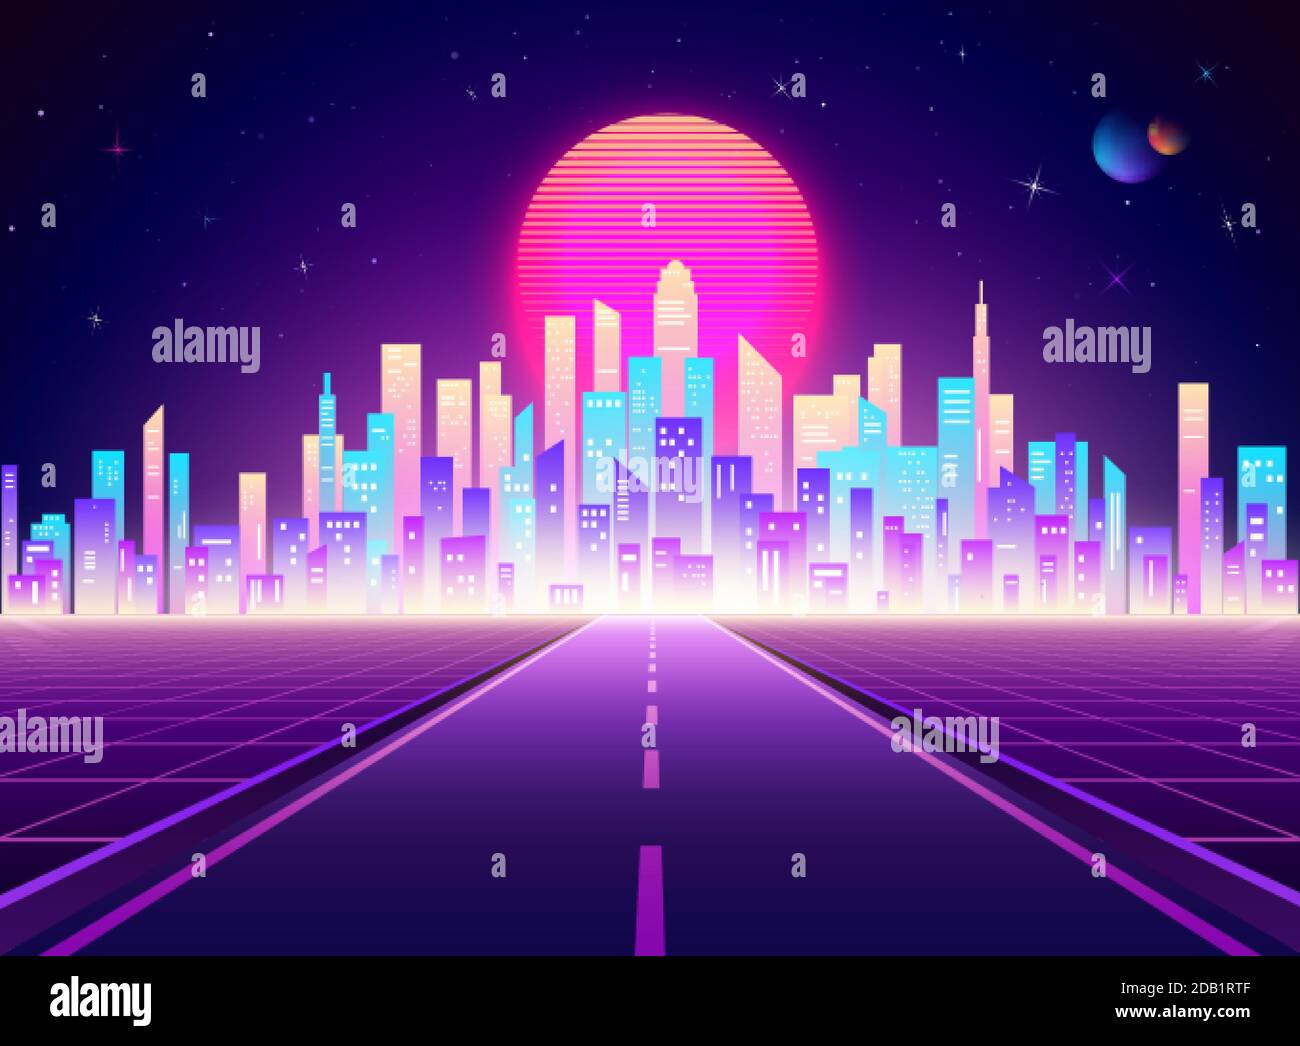 Paesaggio della città retrò al neon. Autostrada per la città futuristica Cyberpunk. Architettura digitale astratta di background fantascientifico. Illustrazione vettoriale Illustrazione Vettoriale